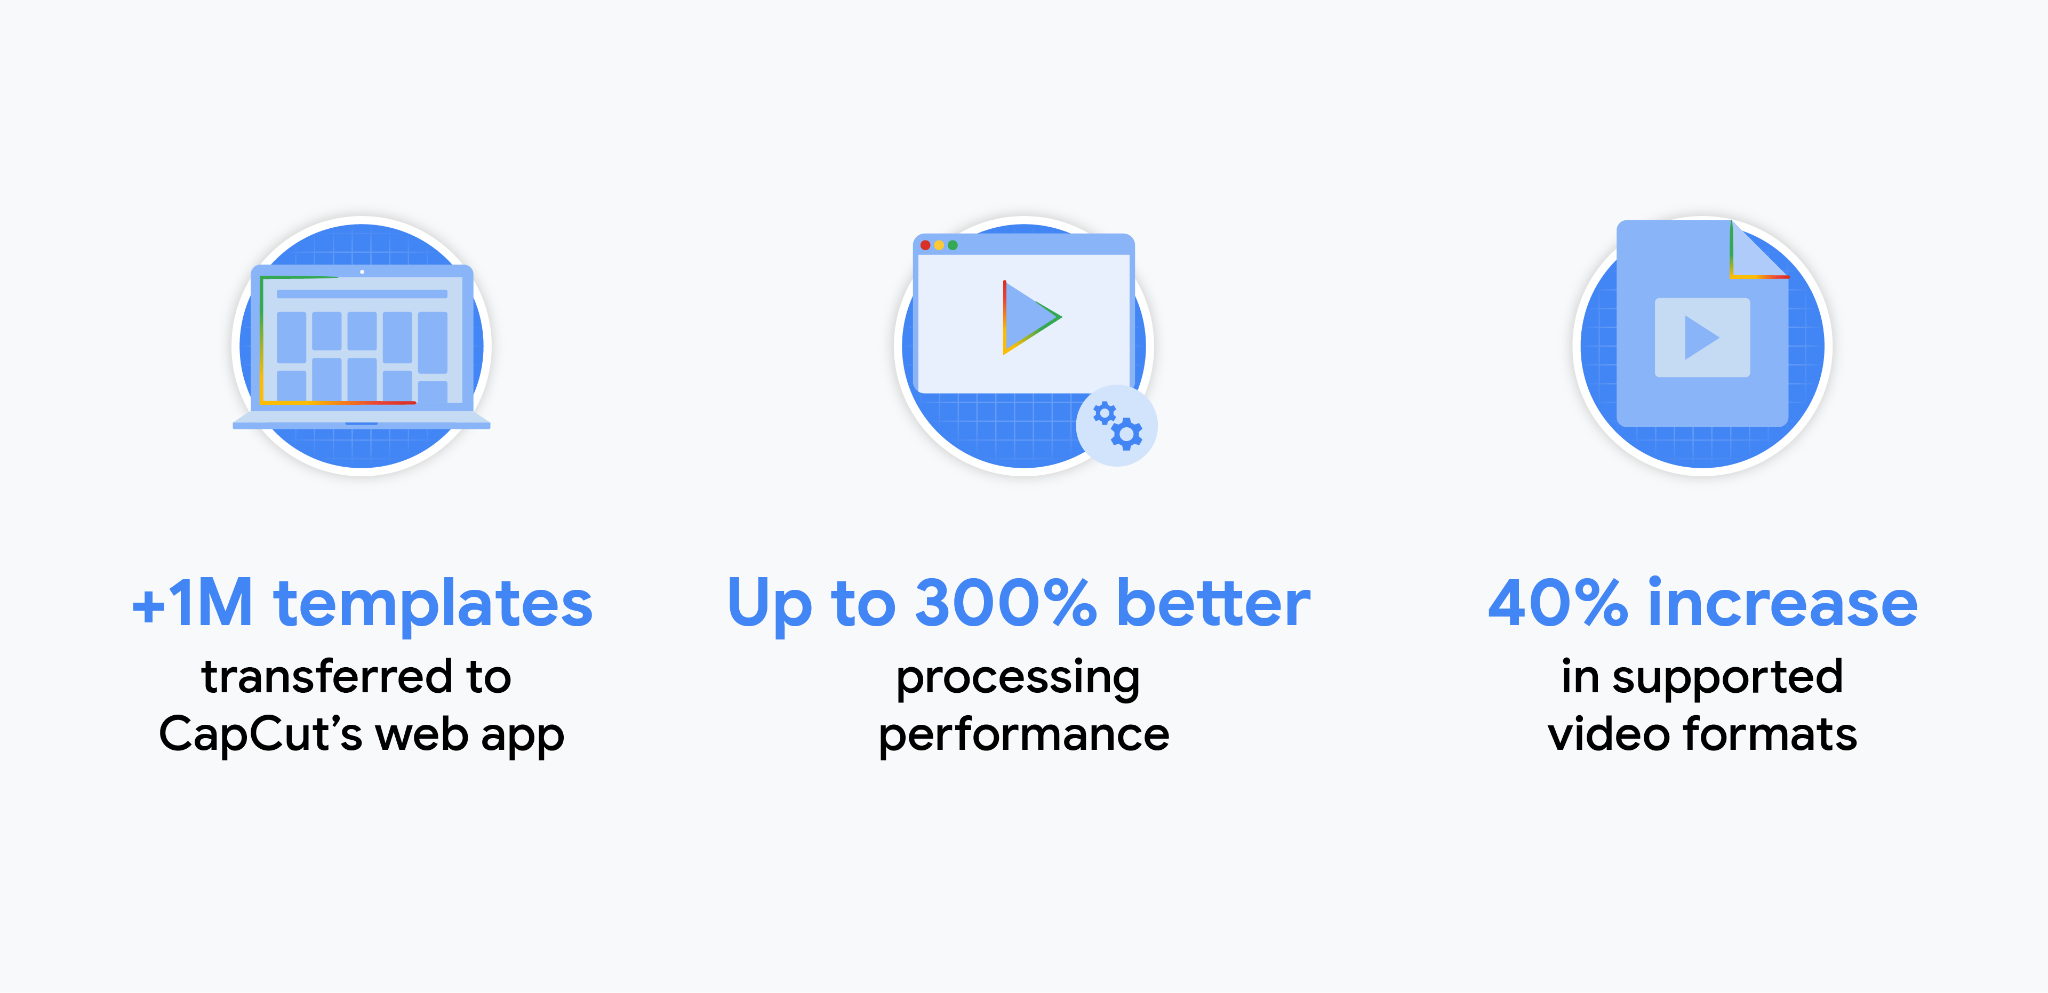 Estatísticas sobre o app CapCut: mais de um milhão de modelos foram transferidos para o app da Web do CapCut. Até 300% de melhoria no desempenho de processamento. Aumento de 40% em formatos de vídeo compatíveis.